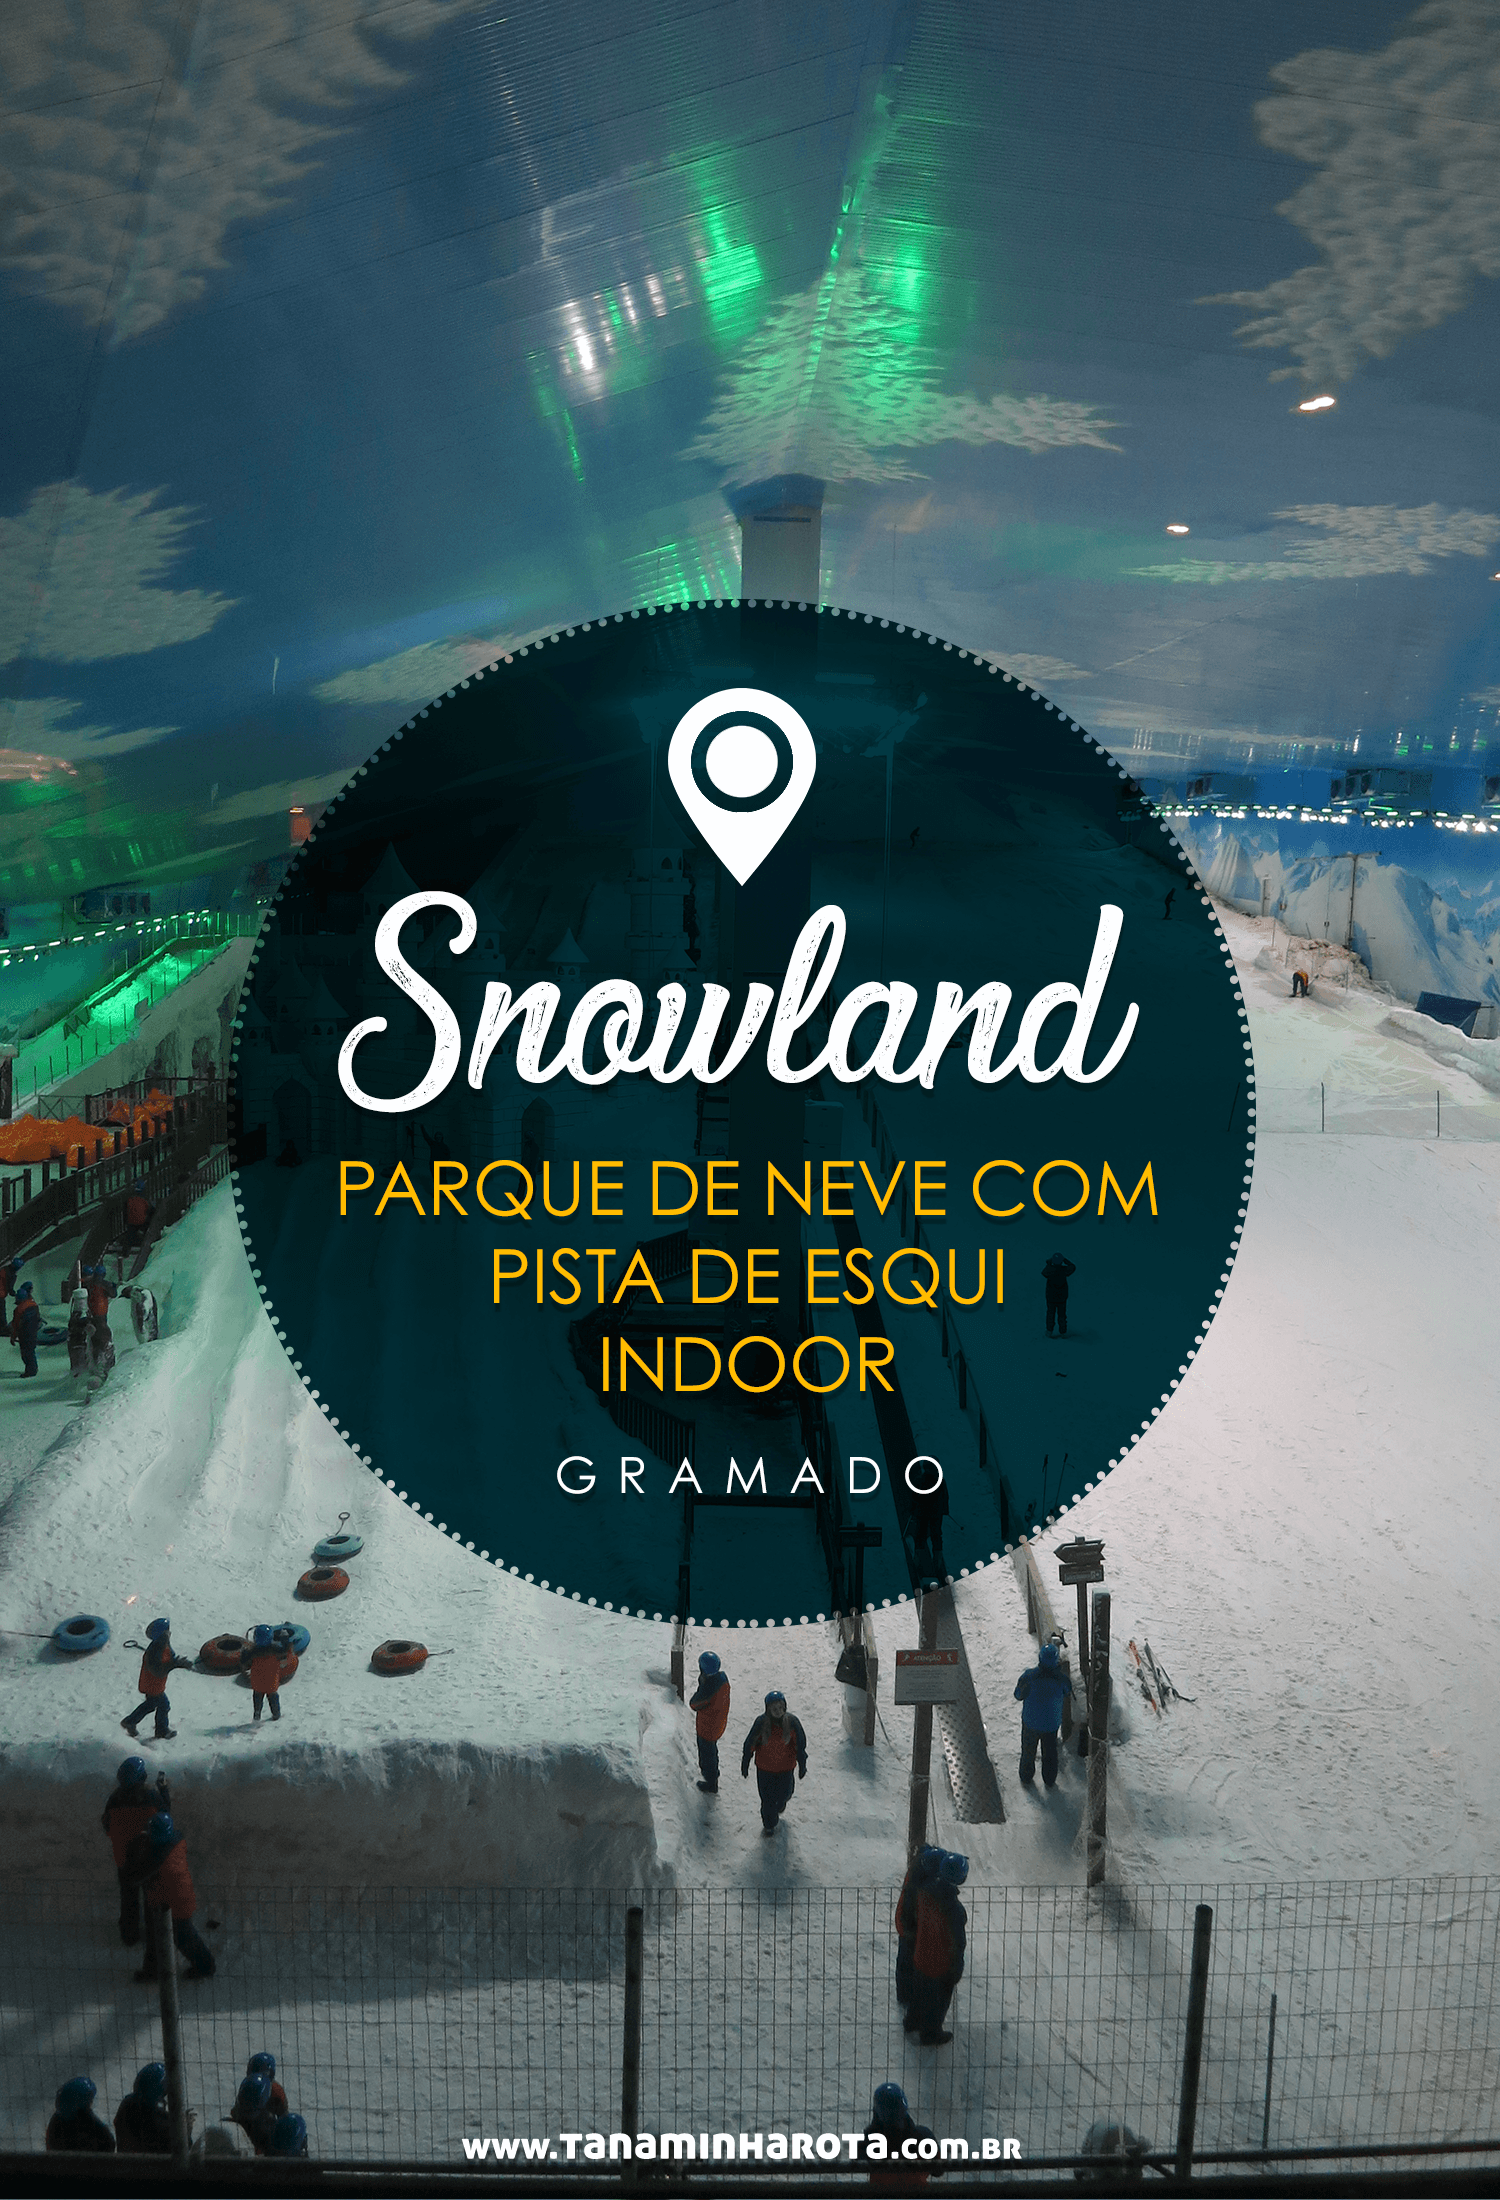  Leia tudo sobre o Snowland em Gramado, primeiro parque de neve com pista de esqui indoor do Brasil! #snowland #gramado #brasil #riograndedosul #viagem